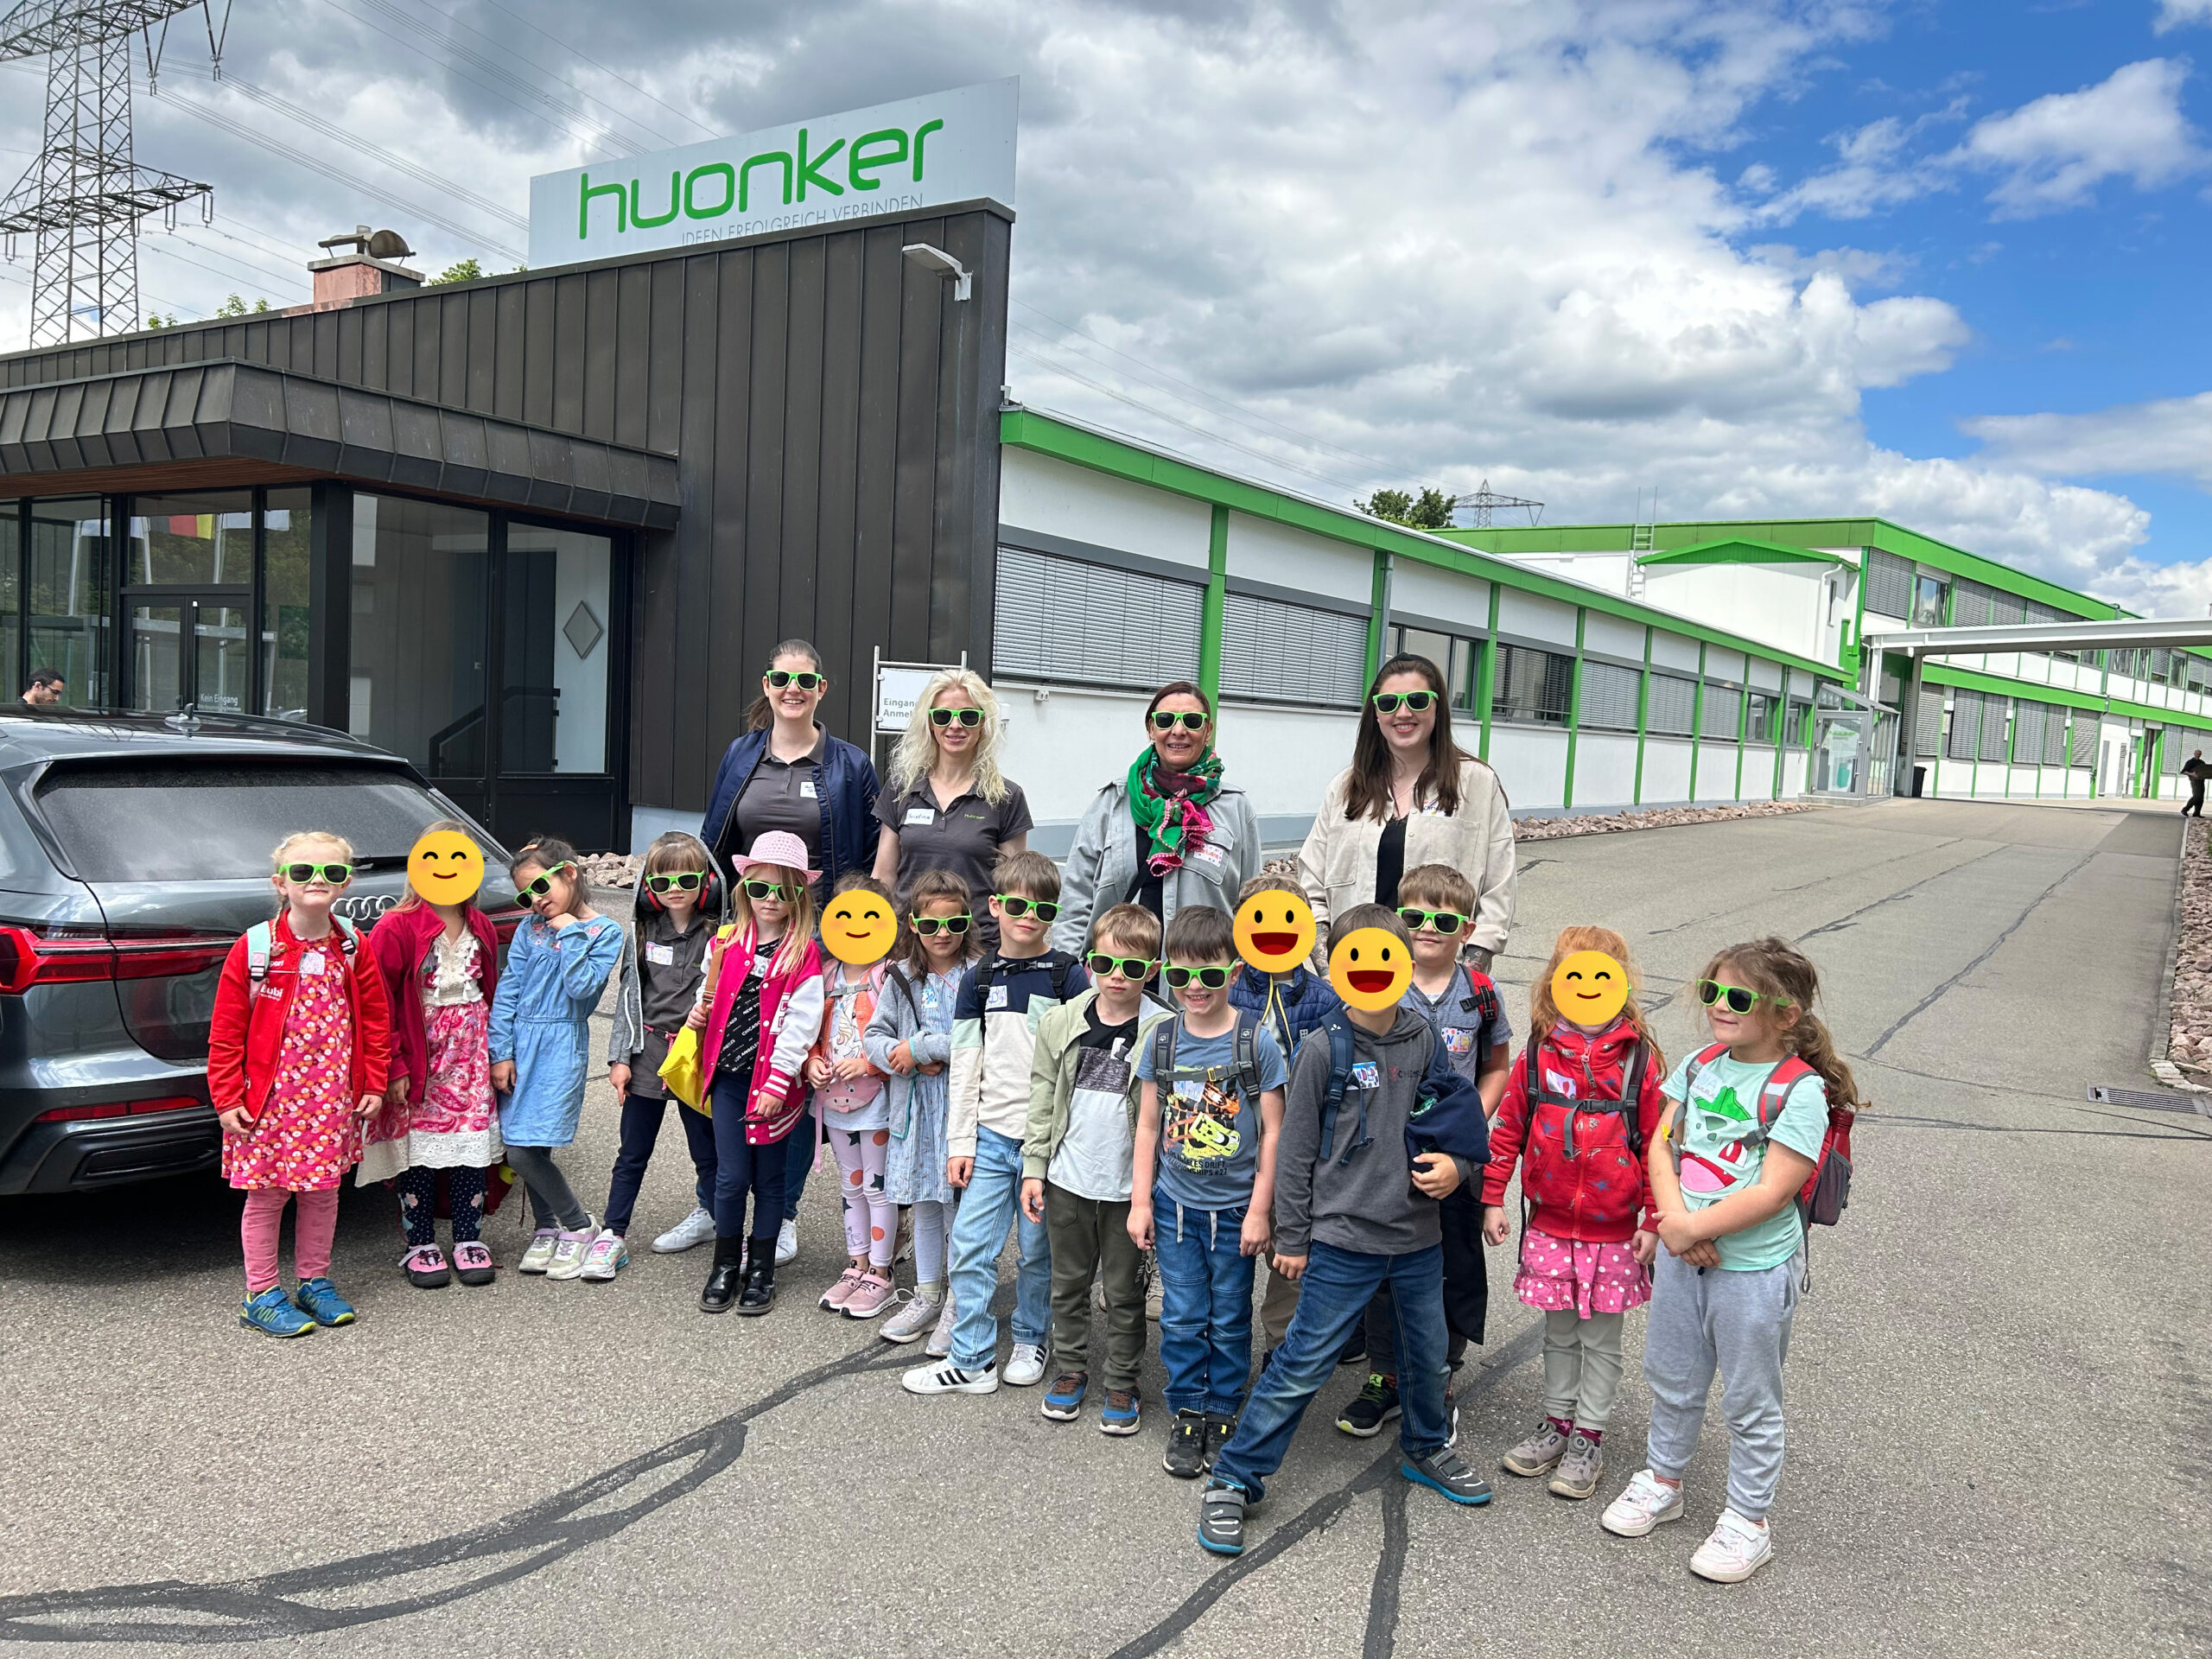 Mit der Rakete auf Exkursion zur Huonker GmbH nach Marbach” – das war das gestrige Motto beim Besuch der Maxis aus dem Kindergarten in Pfaffenweiler 🚀